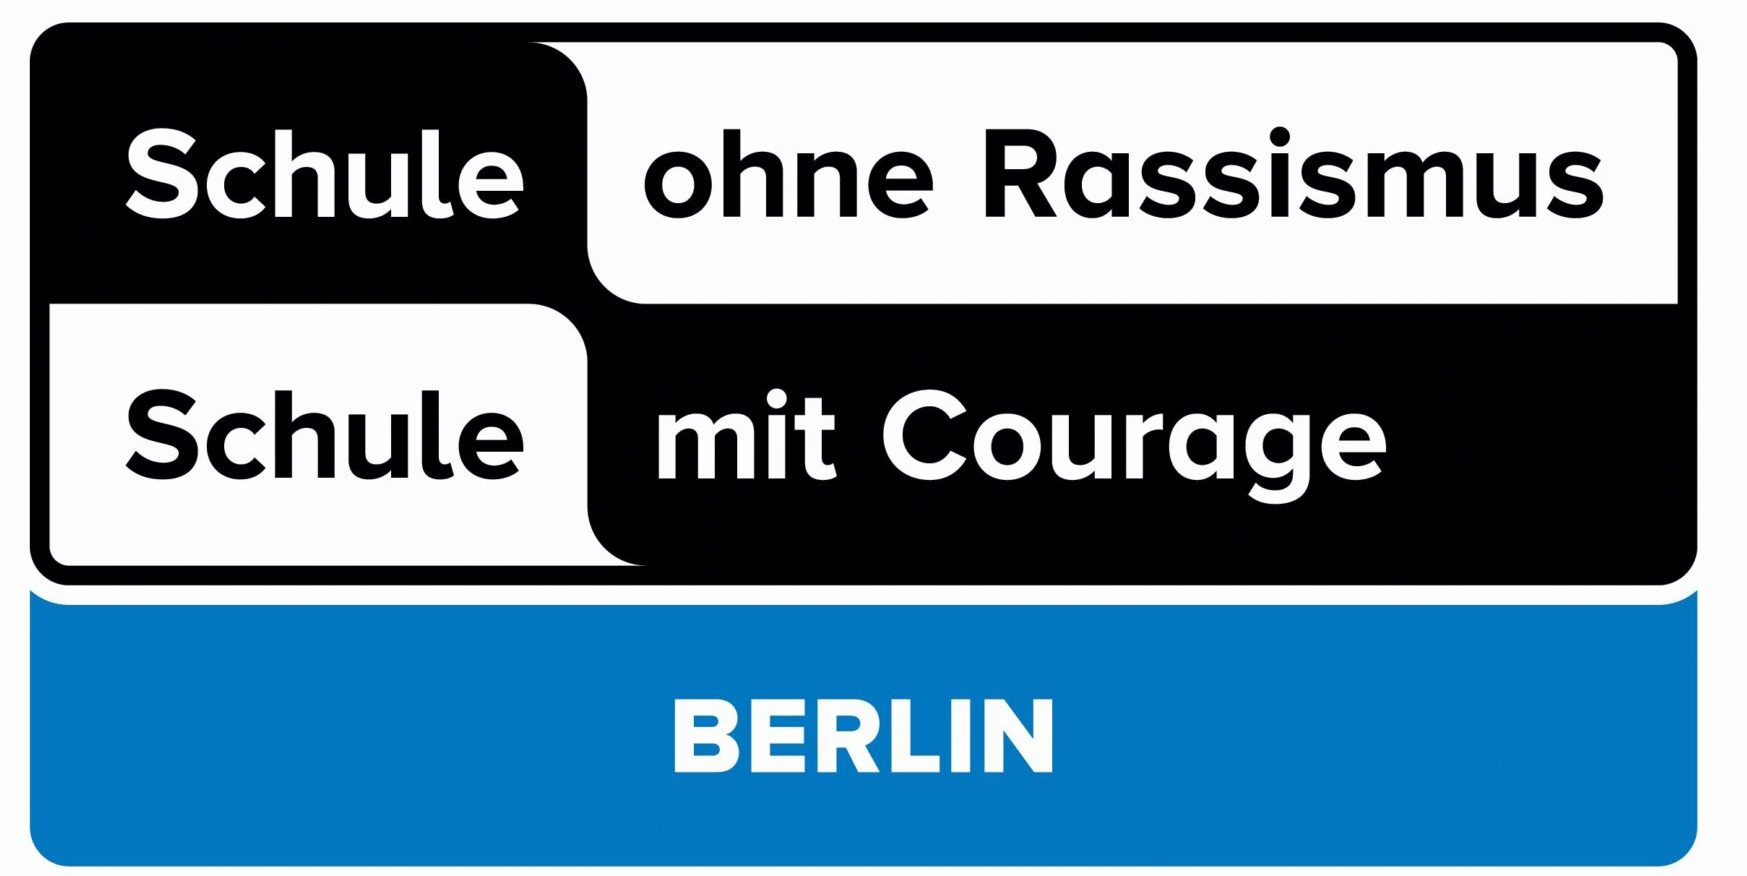 Logo des Netzwerkes Schule ohne Rassismus - Schule mit Courage Berlin